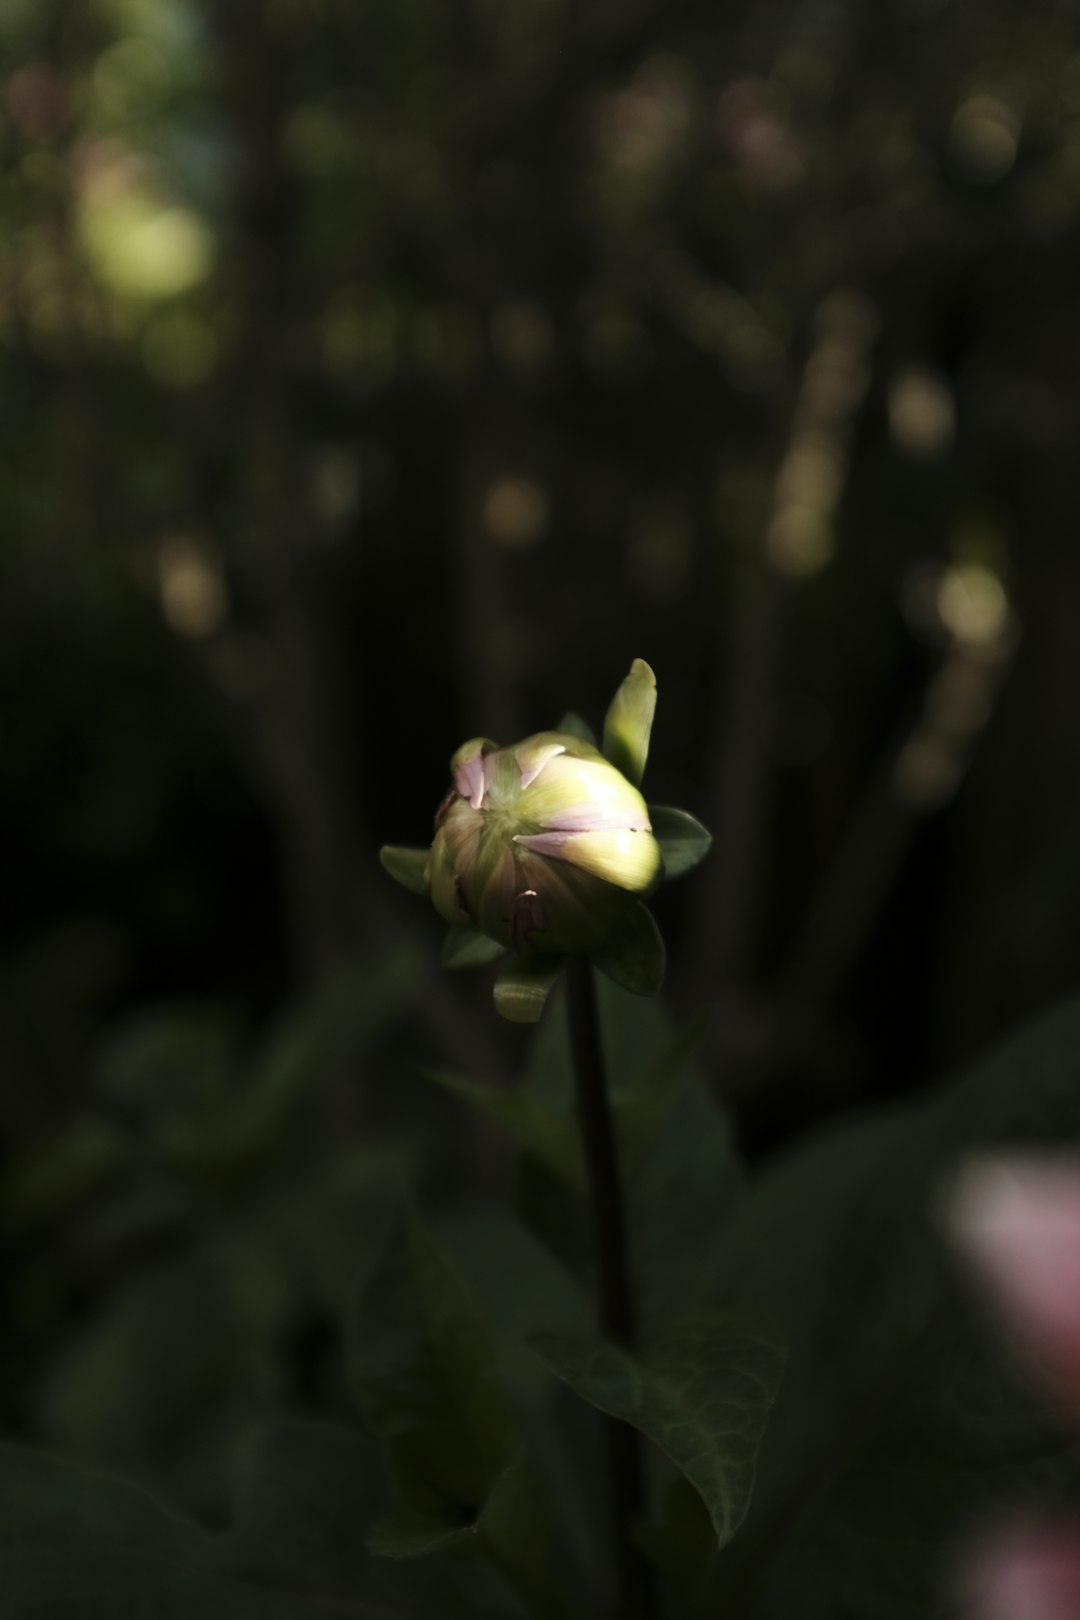 white and green flower in tilt shift lens